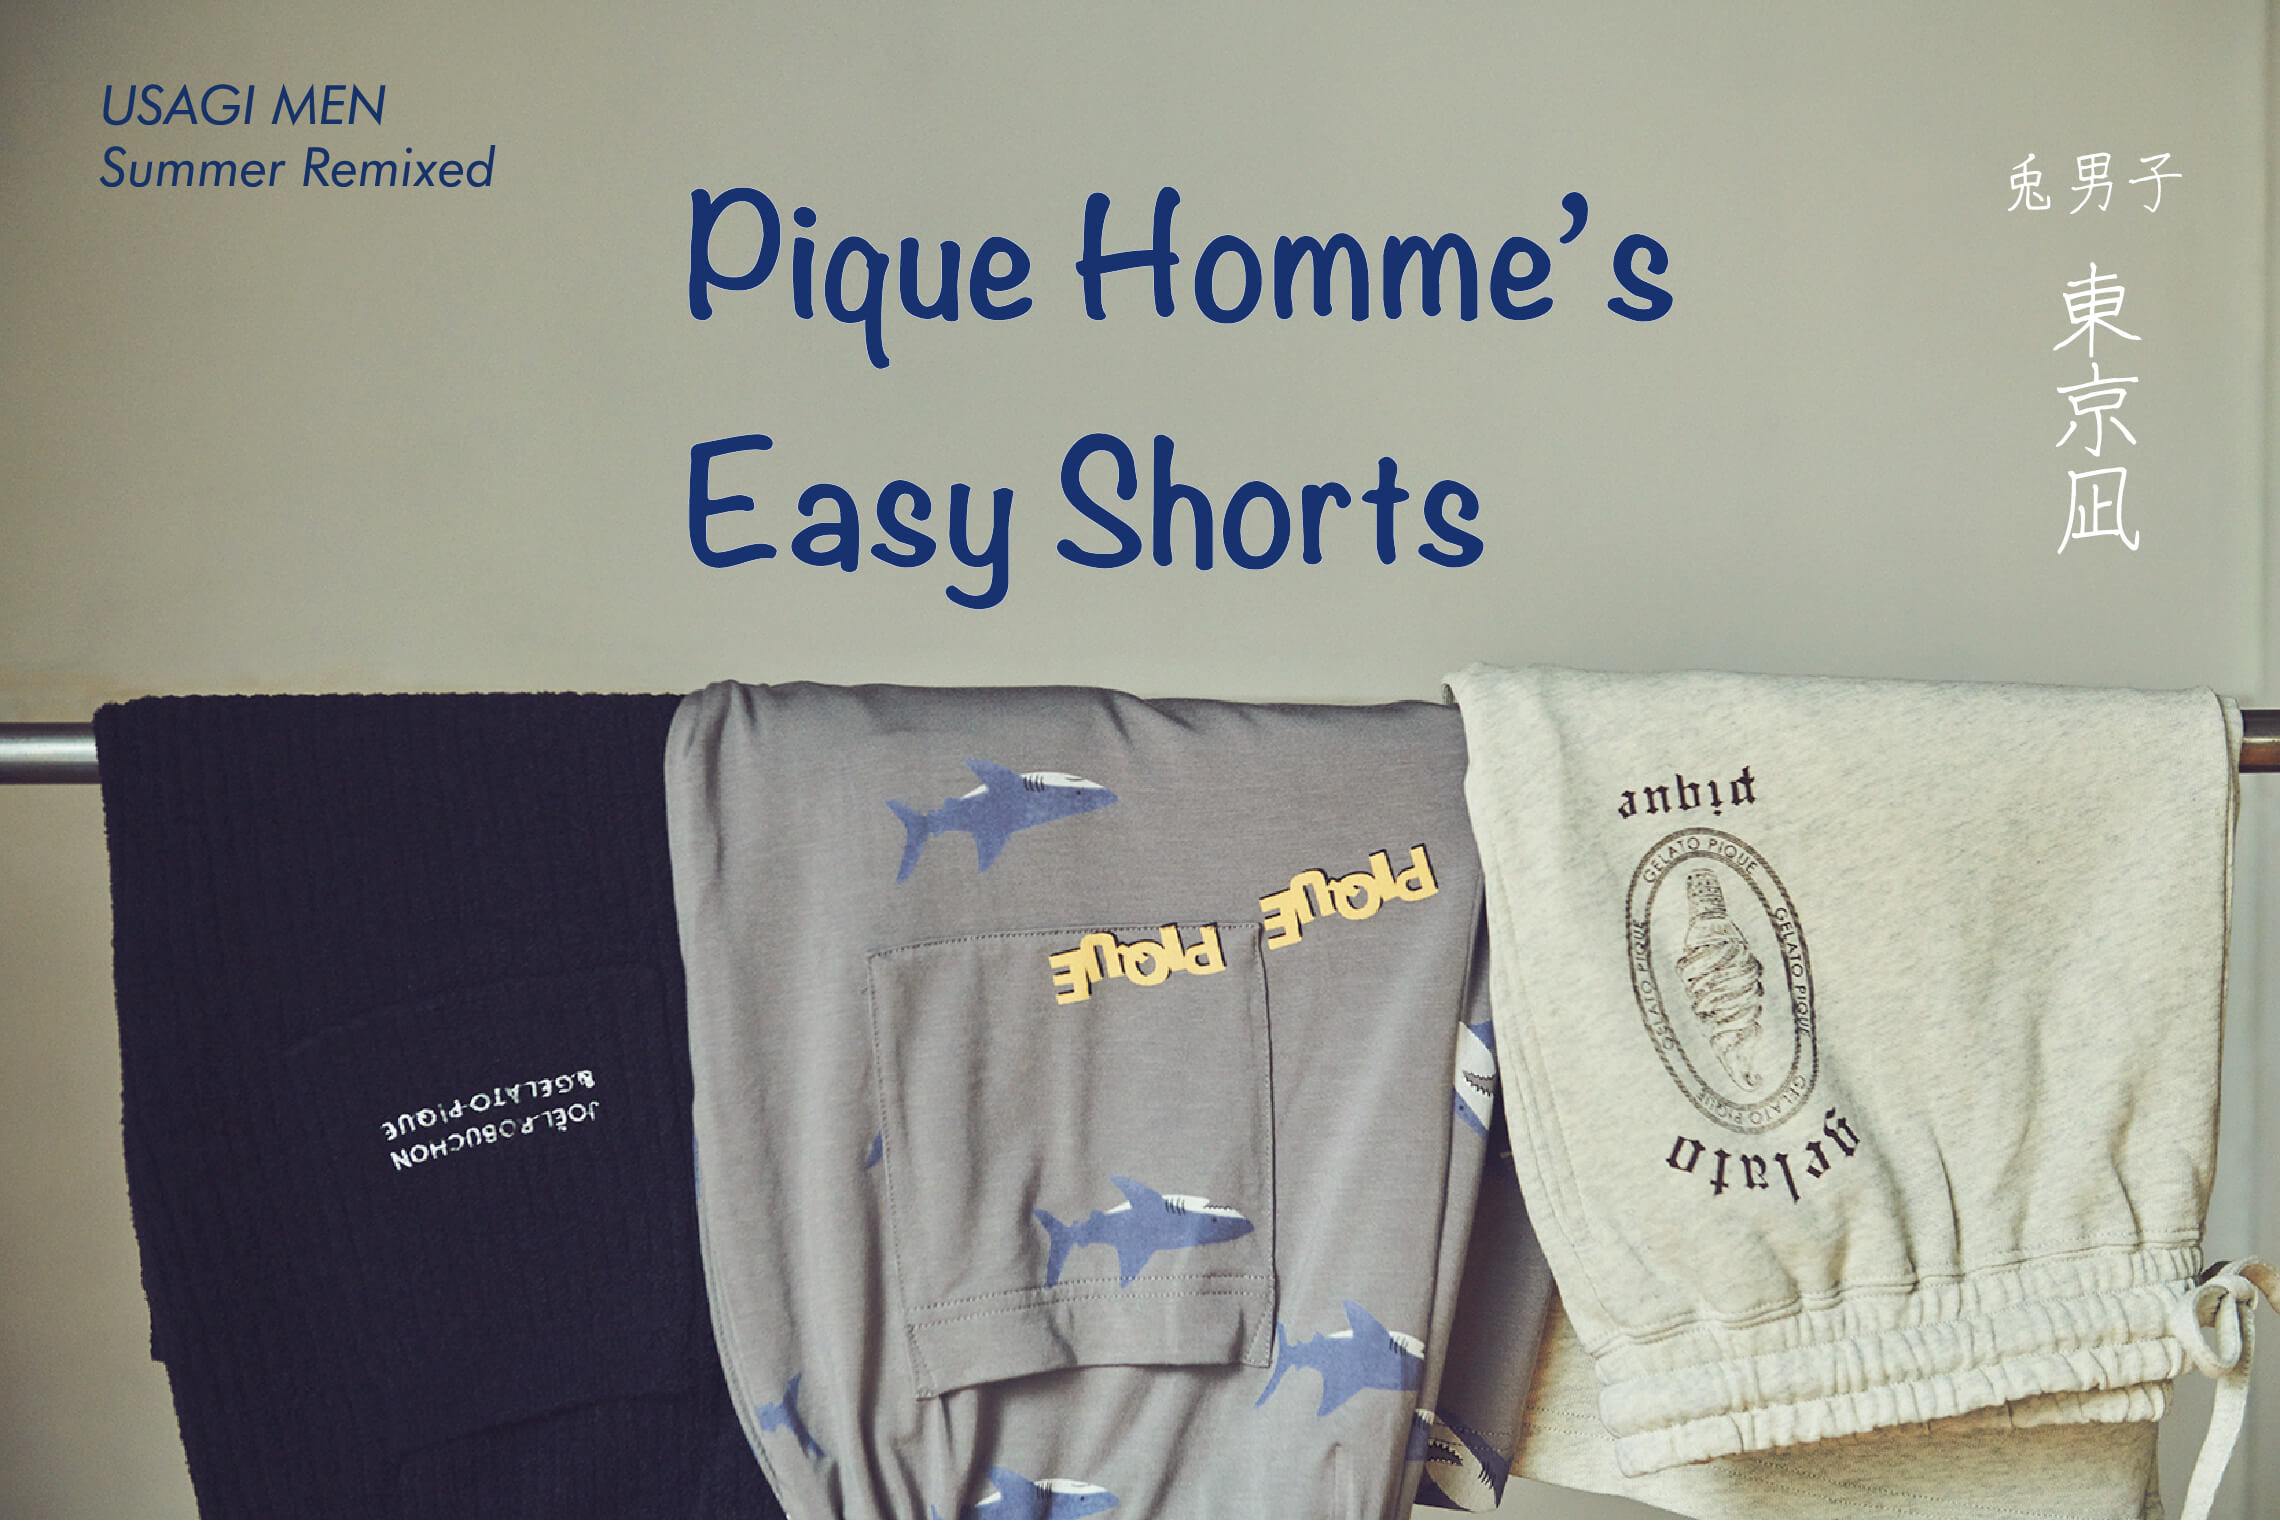 USAGI MEN Summer Remixed Qique Homme's Easy Shorts 兎男子 東京凪